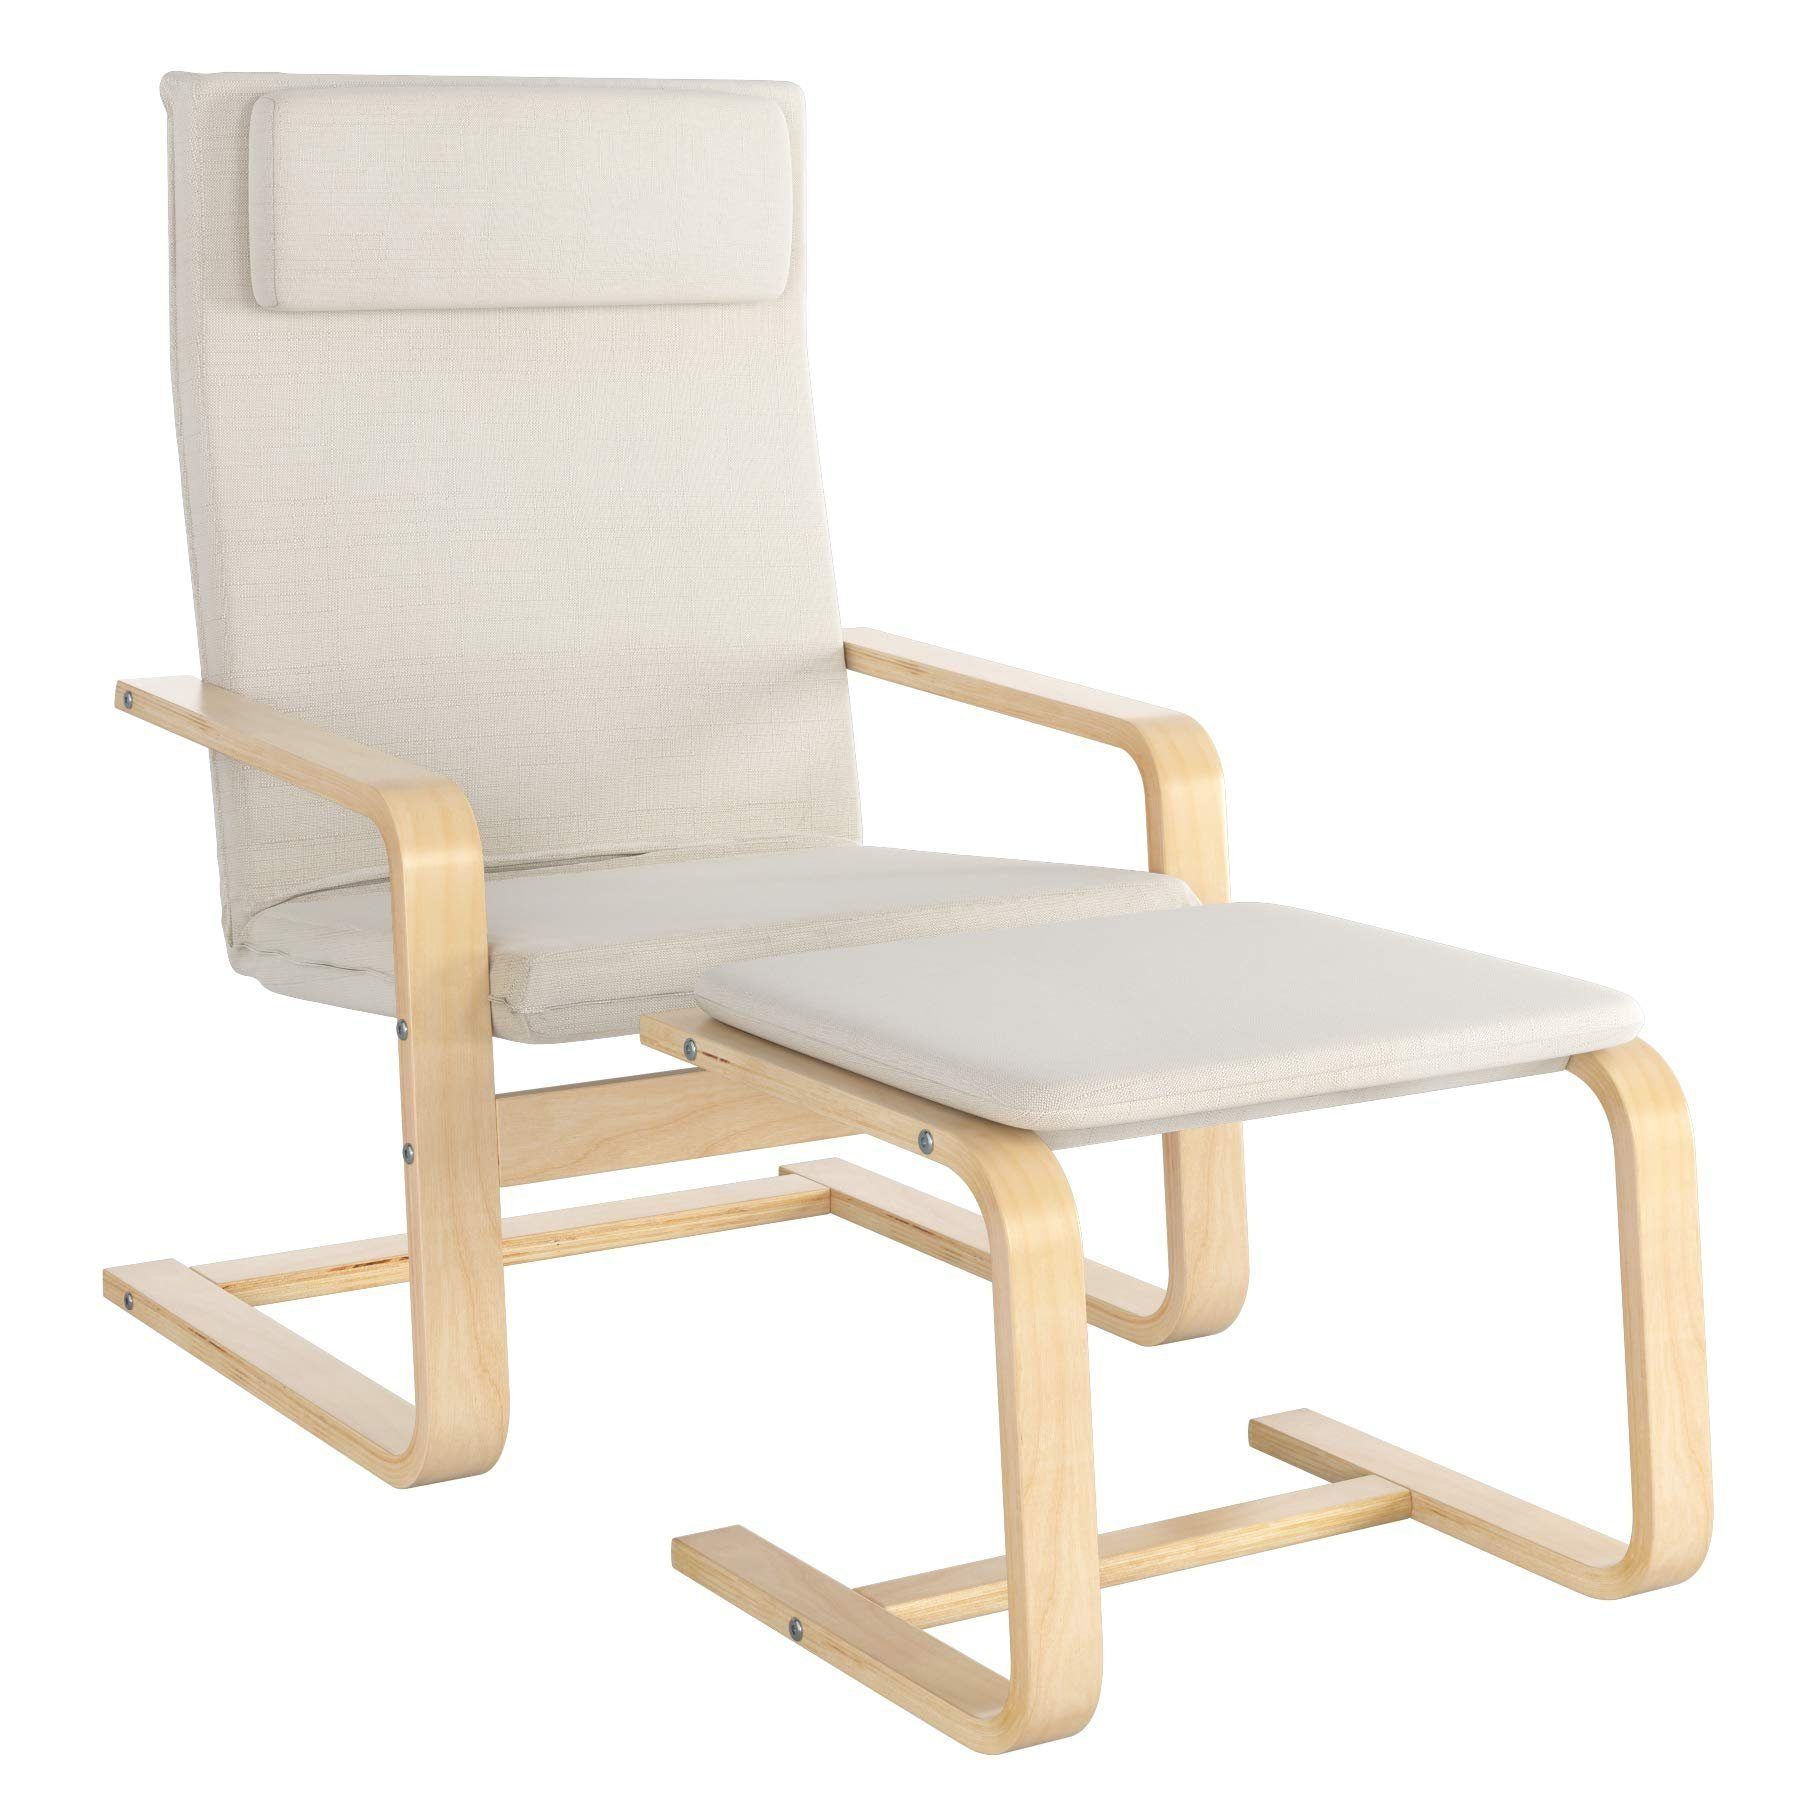 Daskoo Relaxsessel Relaxstuhl mit Fußhocker und Armlehne,66.5x69x96.5 cm (Relaxsessel mit hocker), Sessel Armlehnensessel aus Birkenholz Weiß